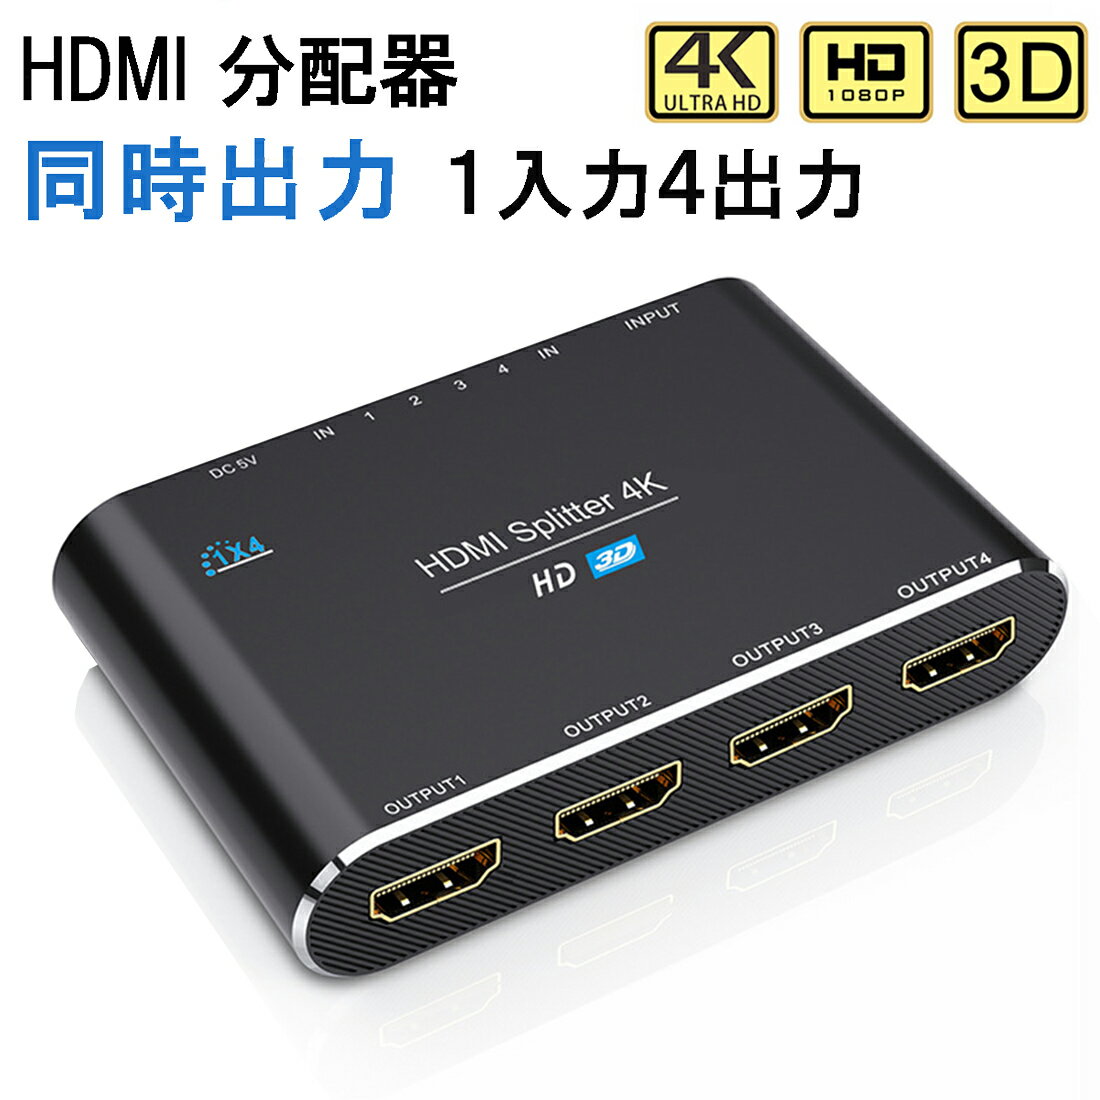 HDMI分配器 同時出力 HDCP2.0 スプリッター 1入